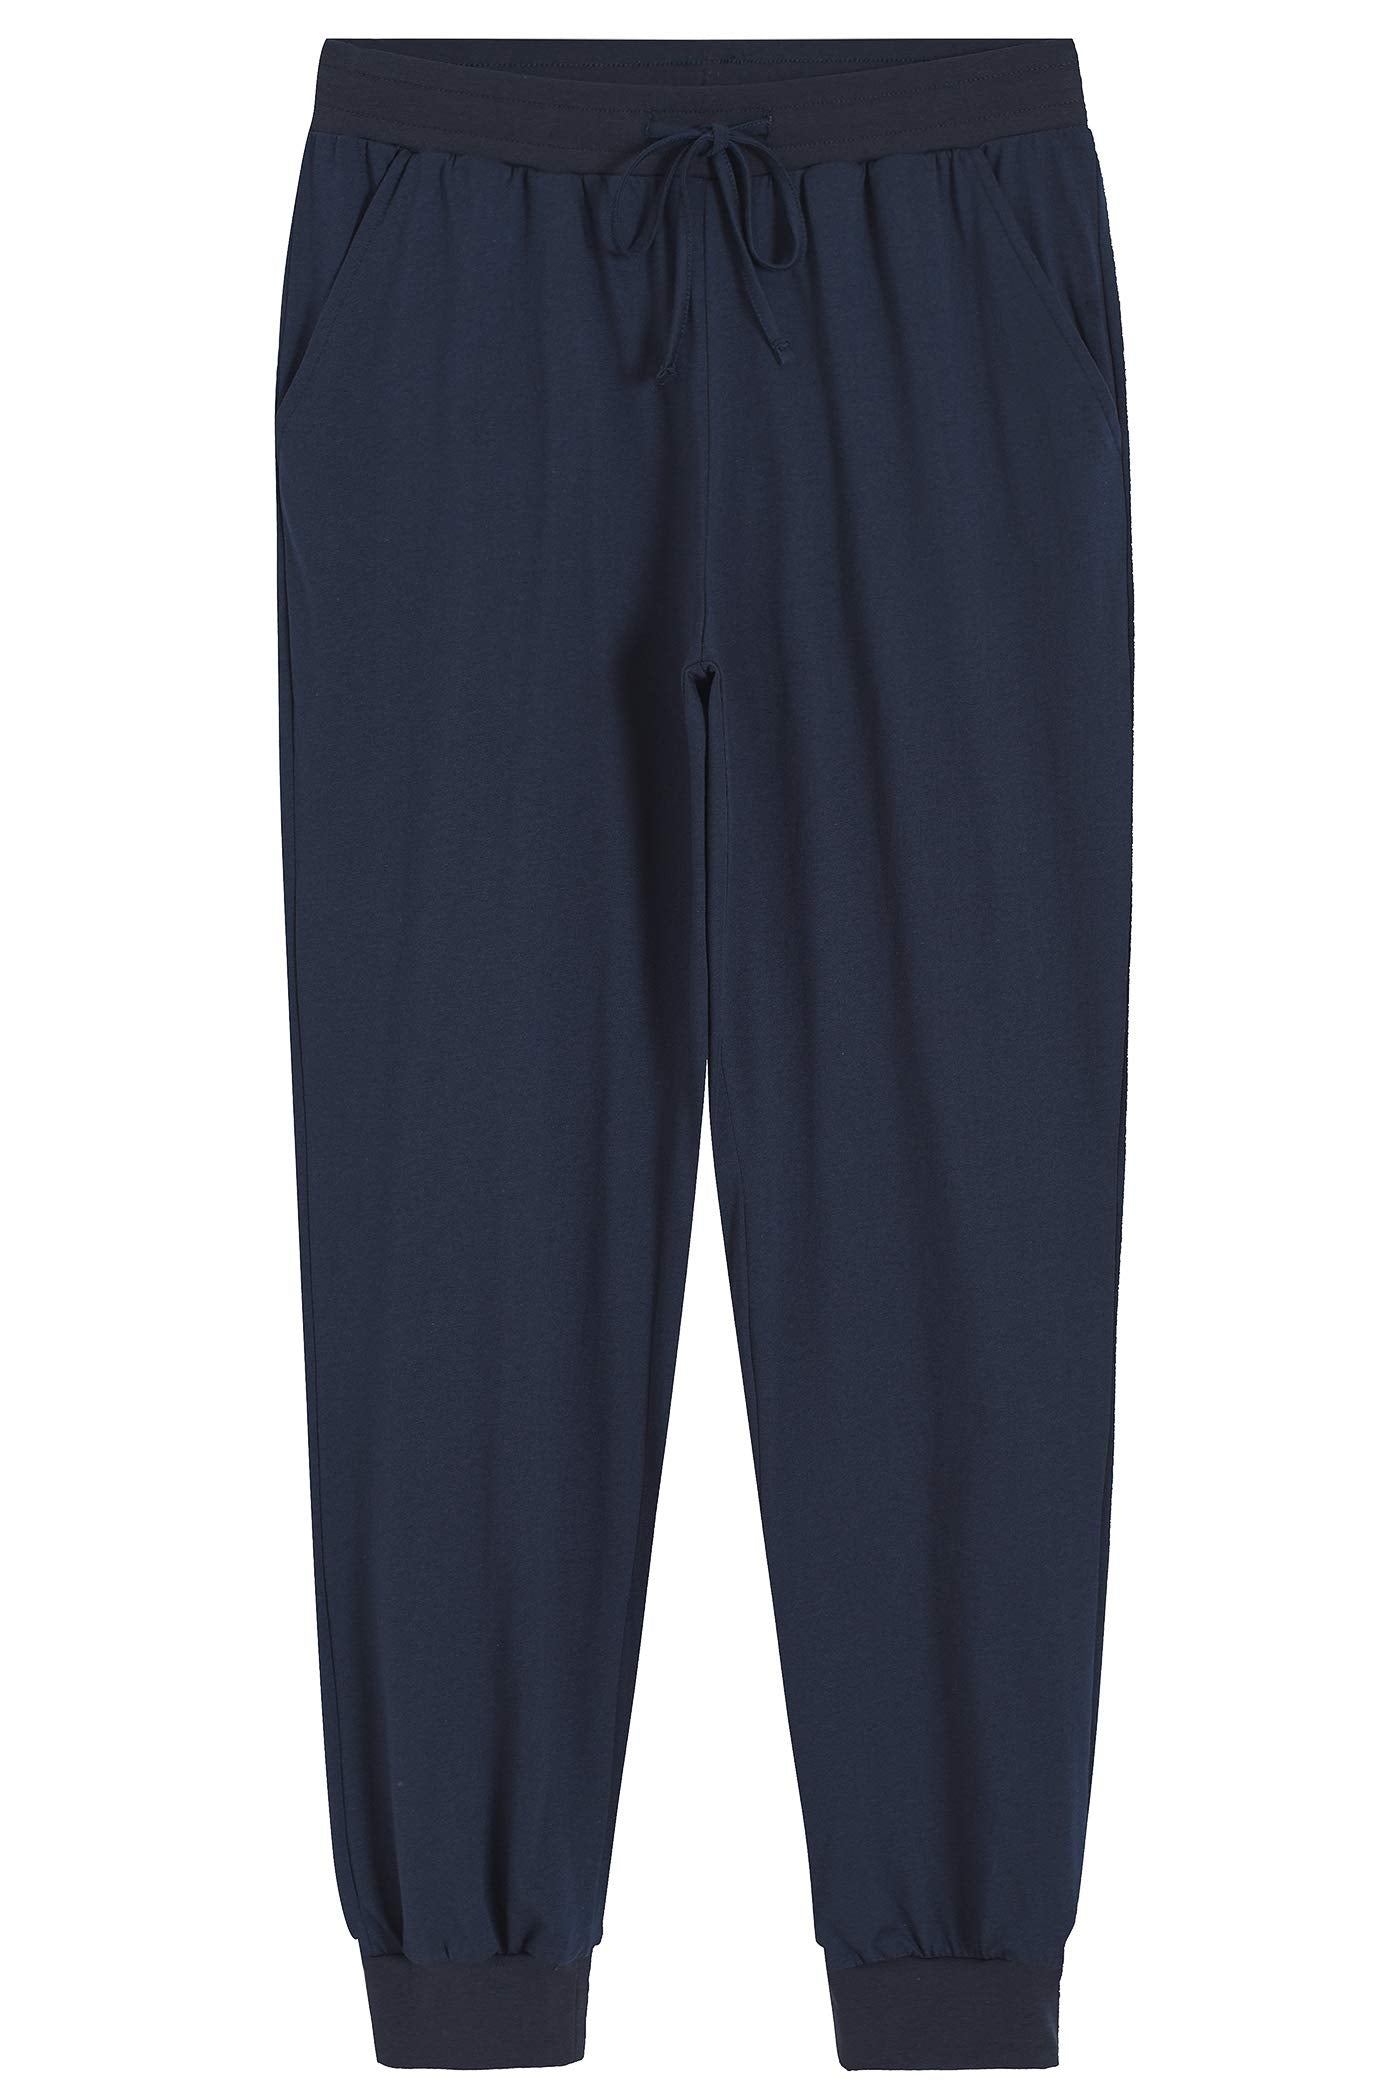 Women's Cotton Pajama Joggers Knit Lounge Pants – Latuza